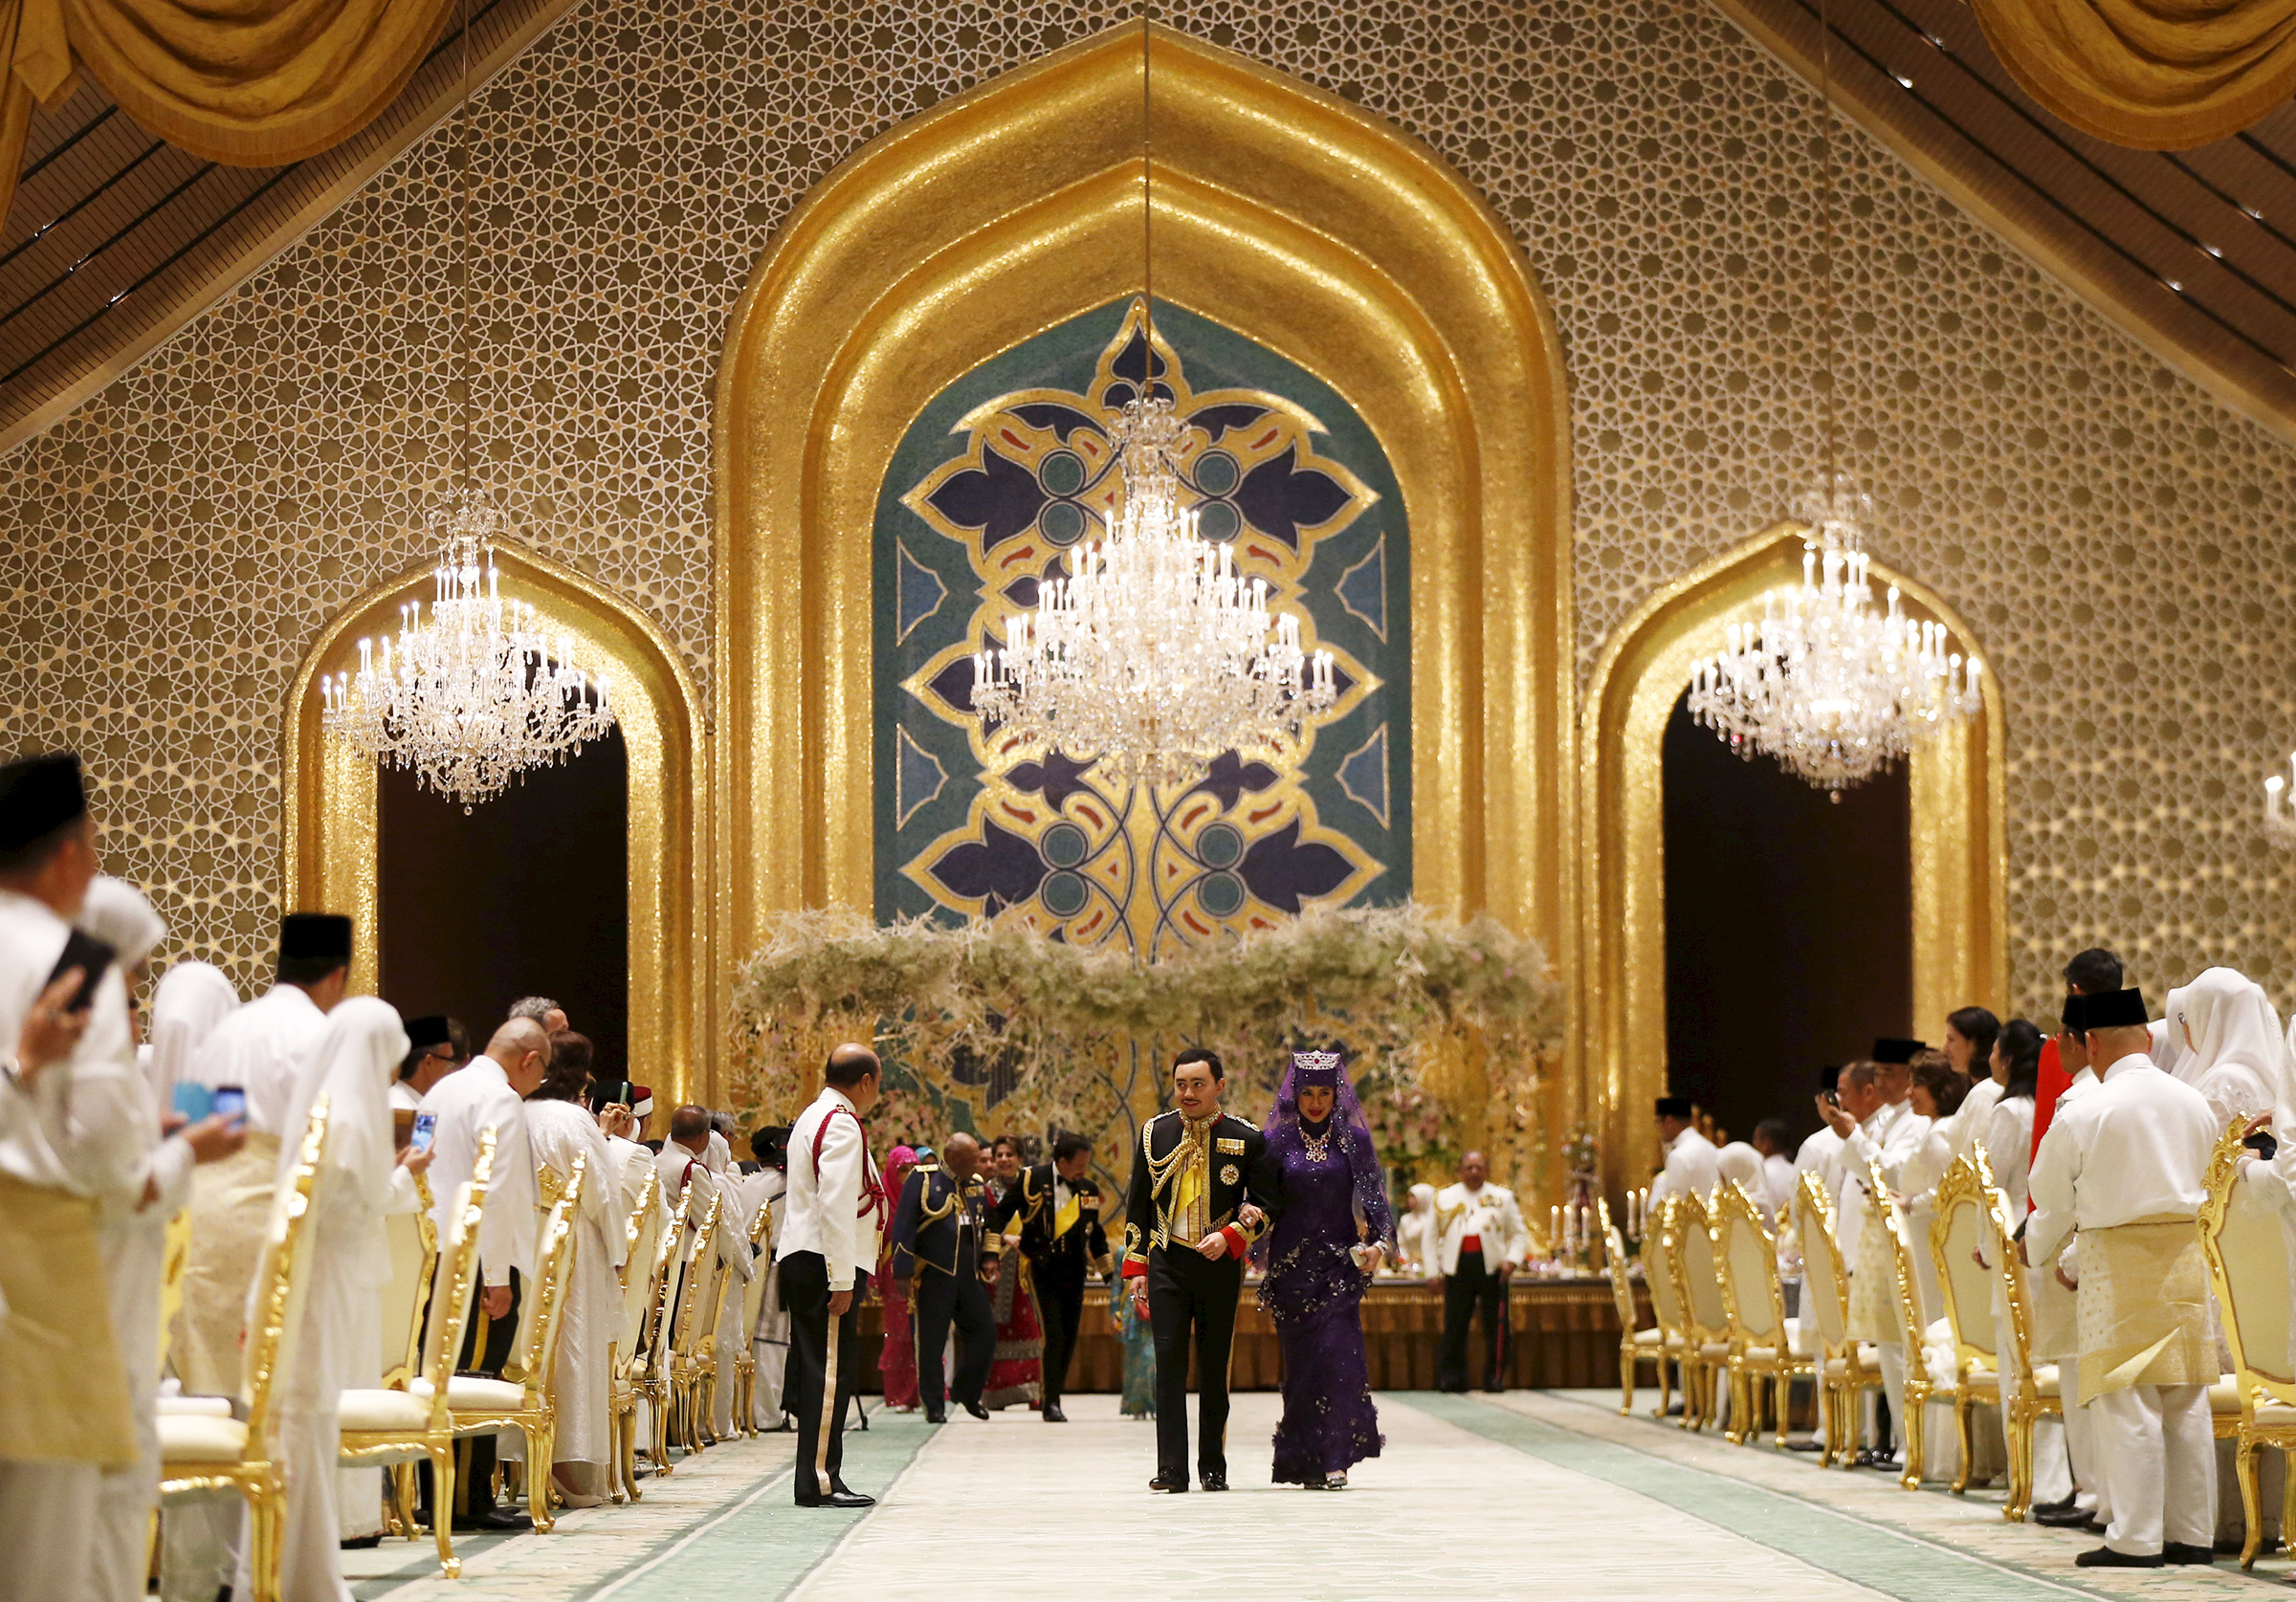 Еще один сын султана Брунея, Абдул Малик, в 2015 году женился на ИT-специалистке Даянгку Раабиатуль Адавии Пенгиран. Брачная церемония продолжалась более десяти дней в одном из самых больших жилых дворцов в мире, насчитывающем более 1,7 тыс. комнат, а букет невесты состоял из драгоценных камней. О стоимости церемонии не сообщалось.
